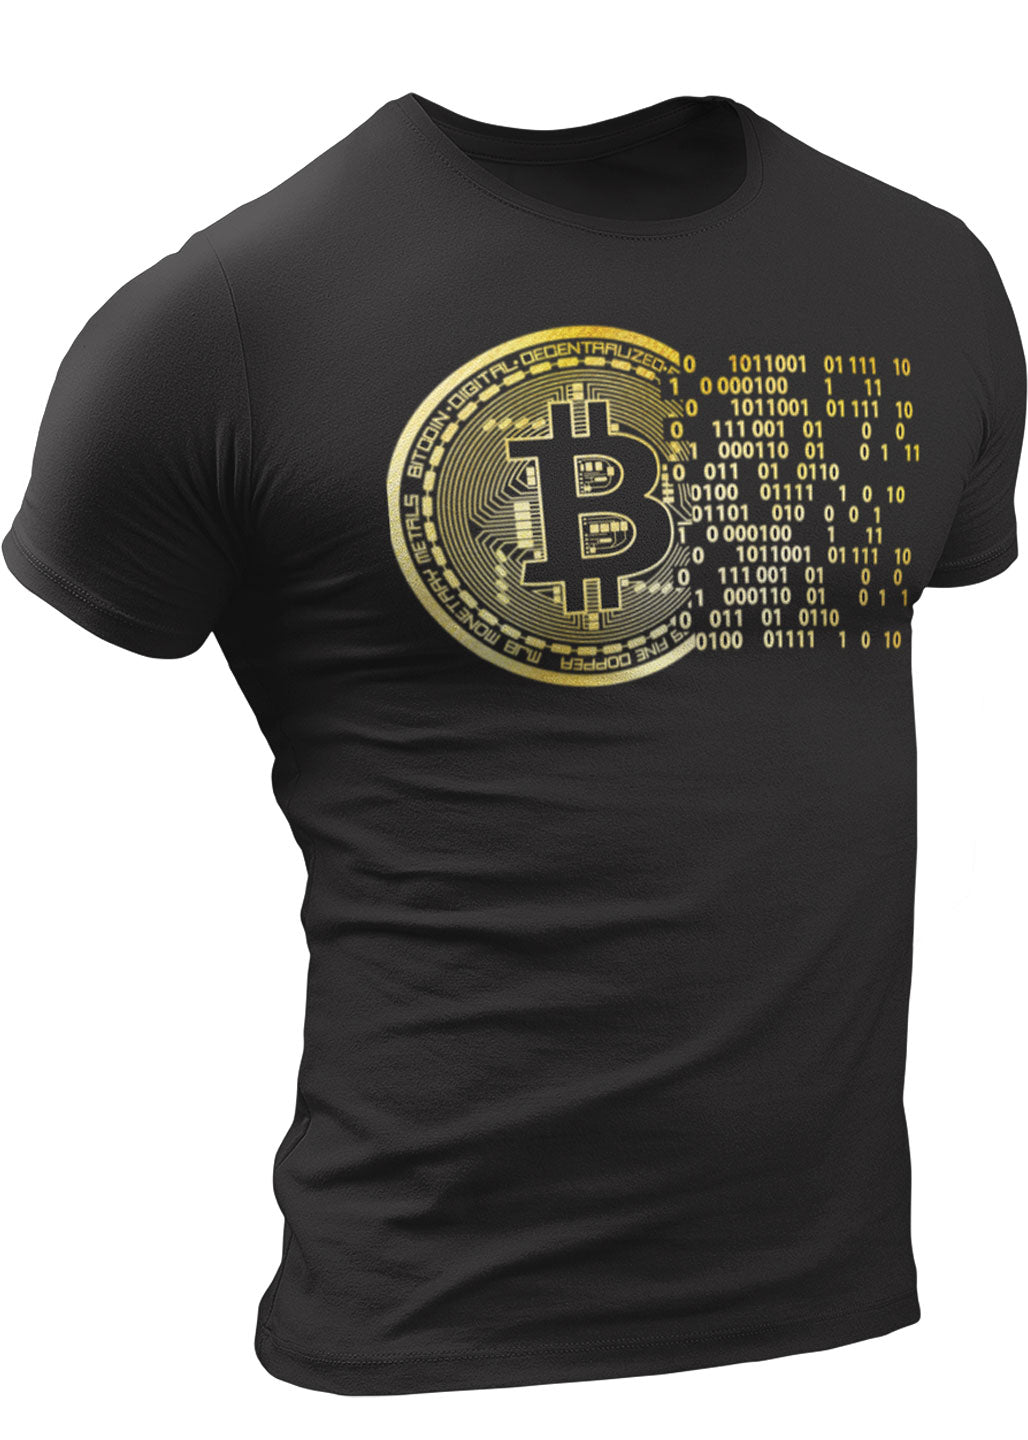 crypto t shirts